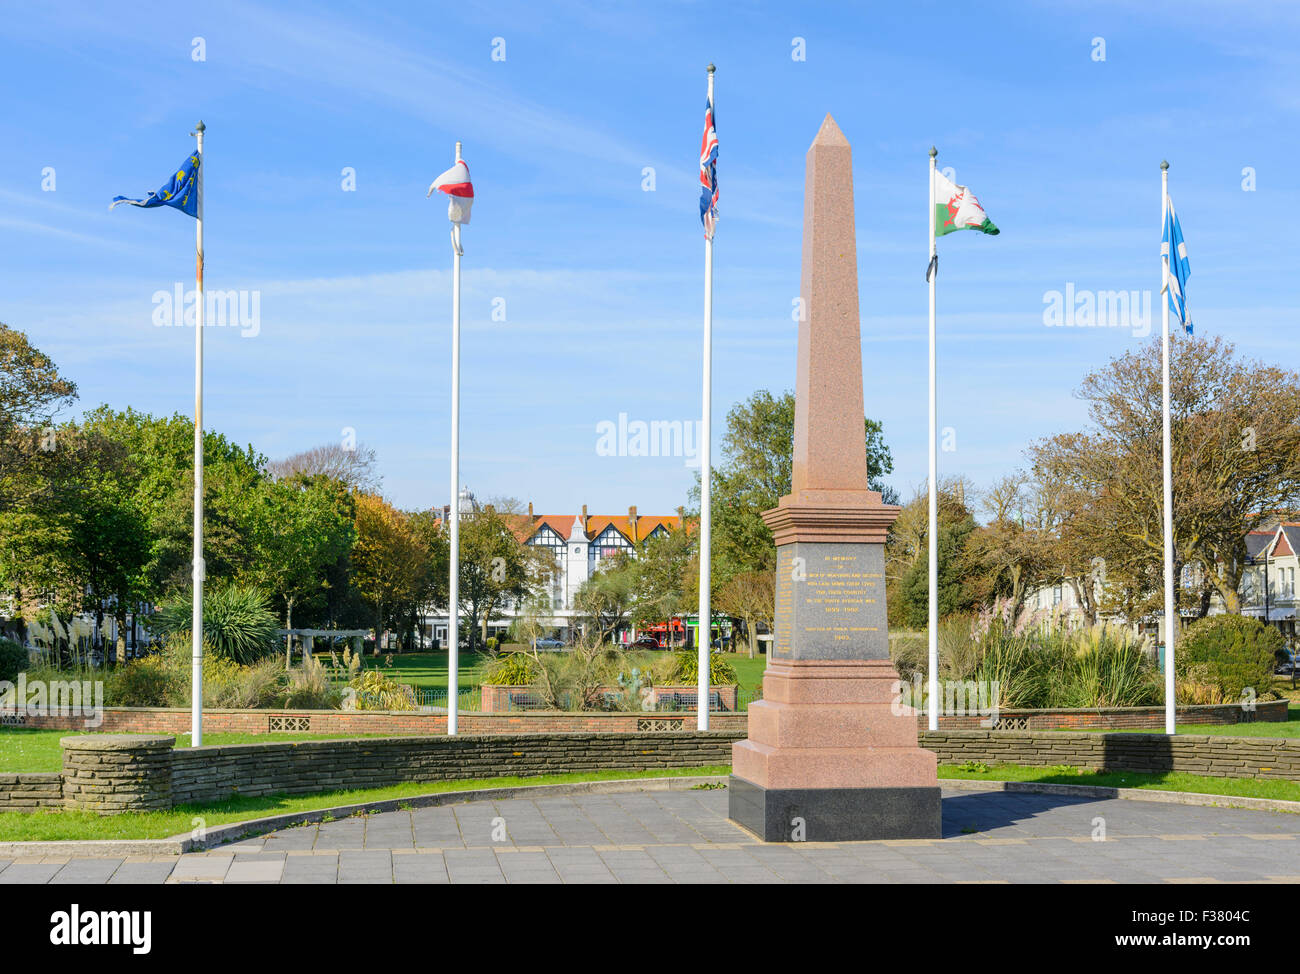 Memoriale di guerra per i morti della guerra sudafricana (1899-1902) in giardini Steyne a Worthing West Sussex, in Inghilterra, Regno Unito. Monumento di guerra. Foto Stock